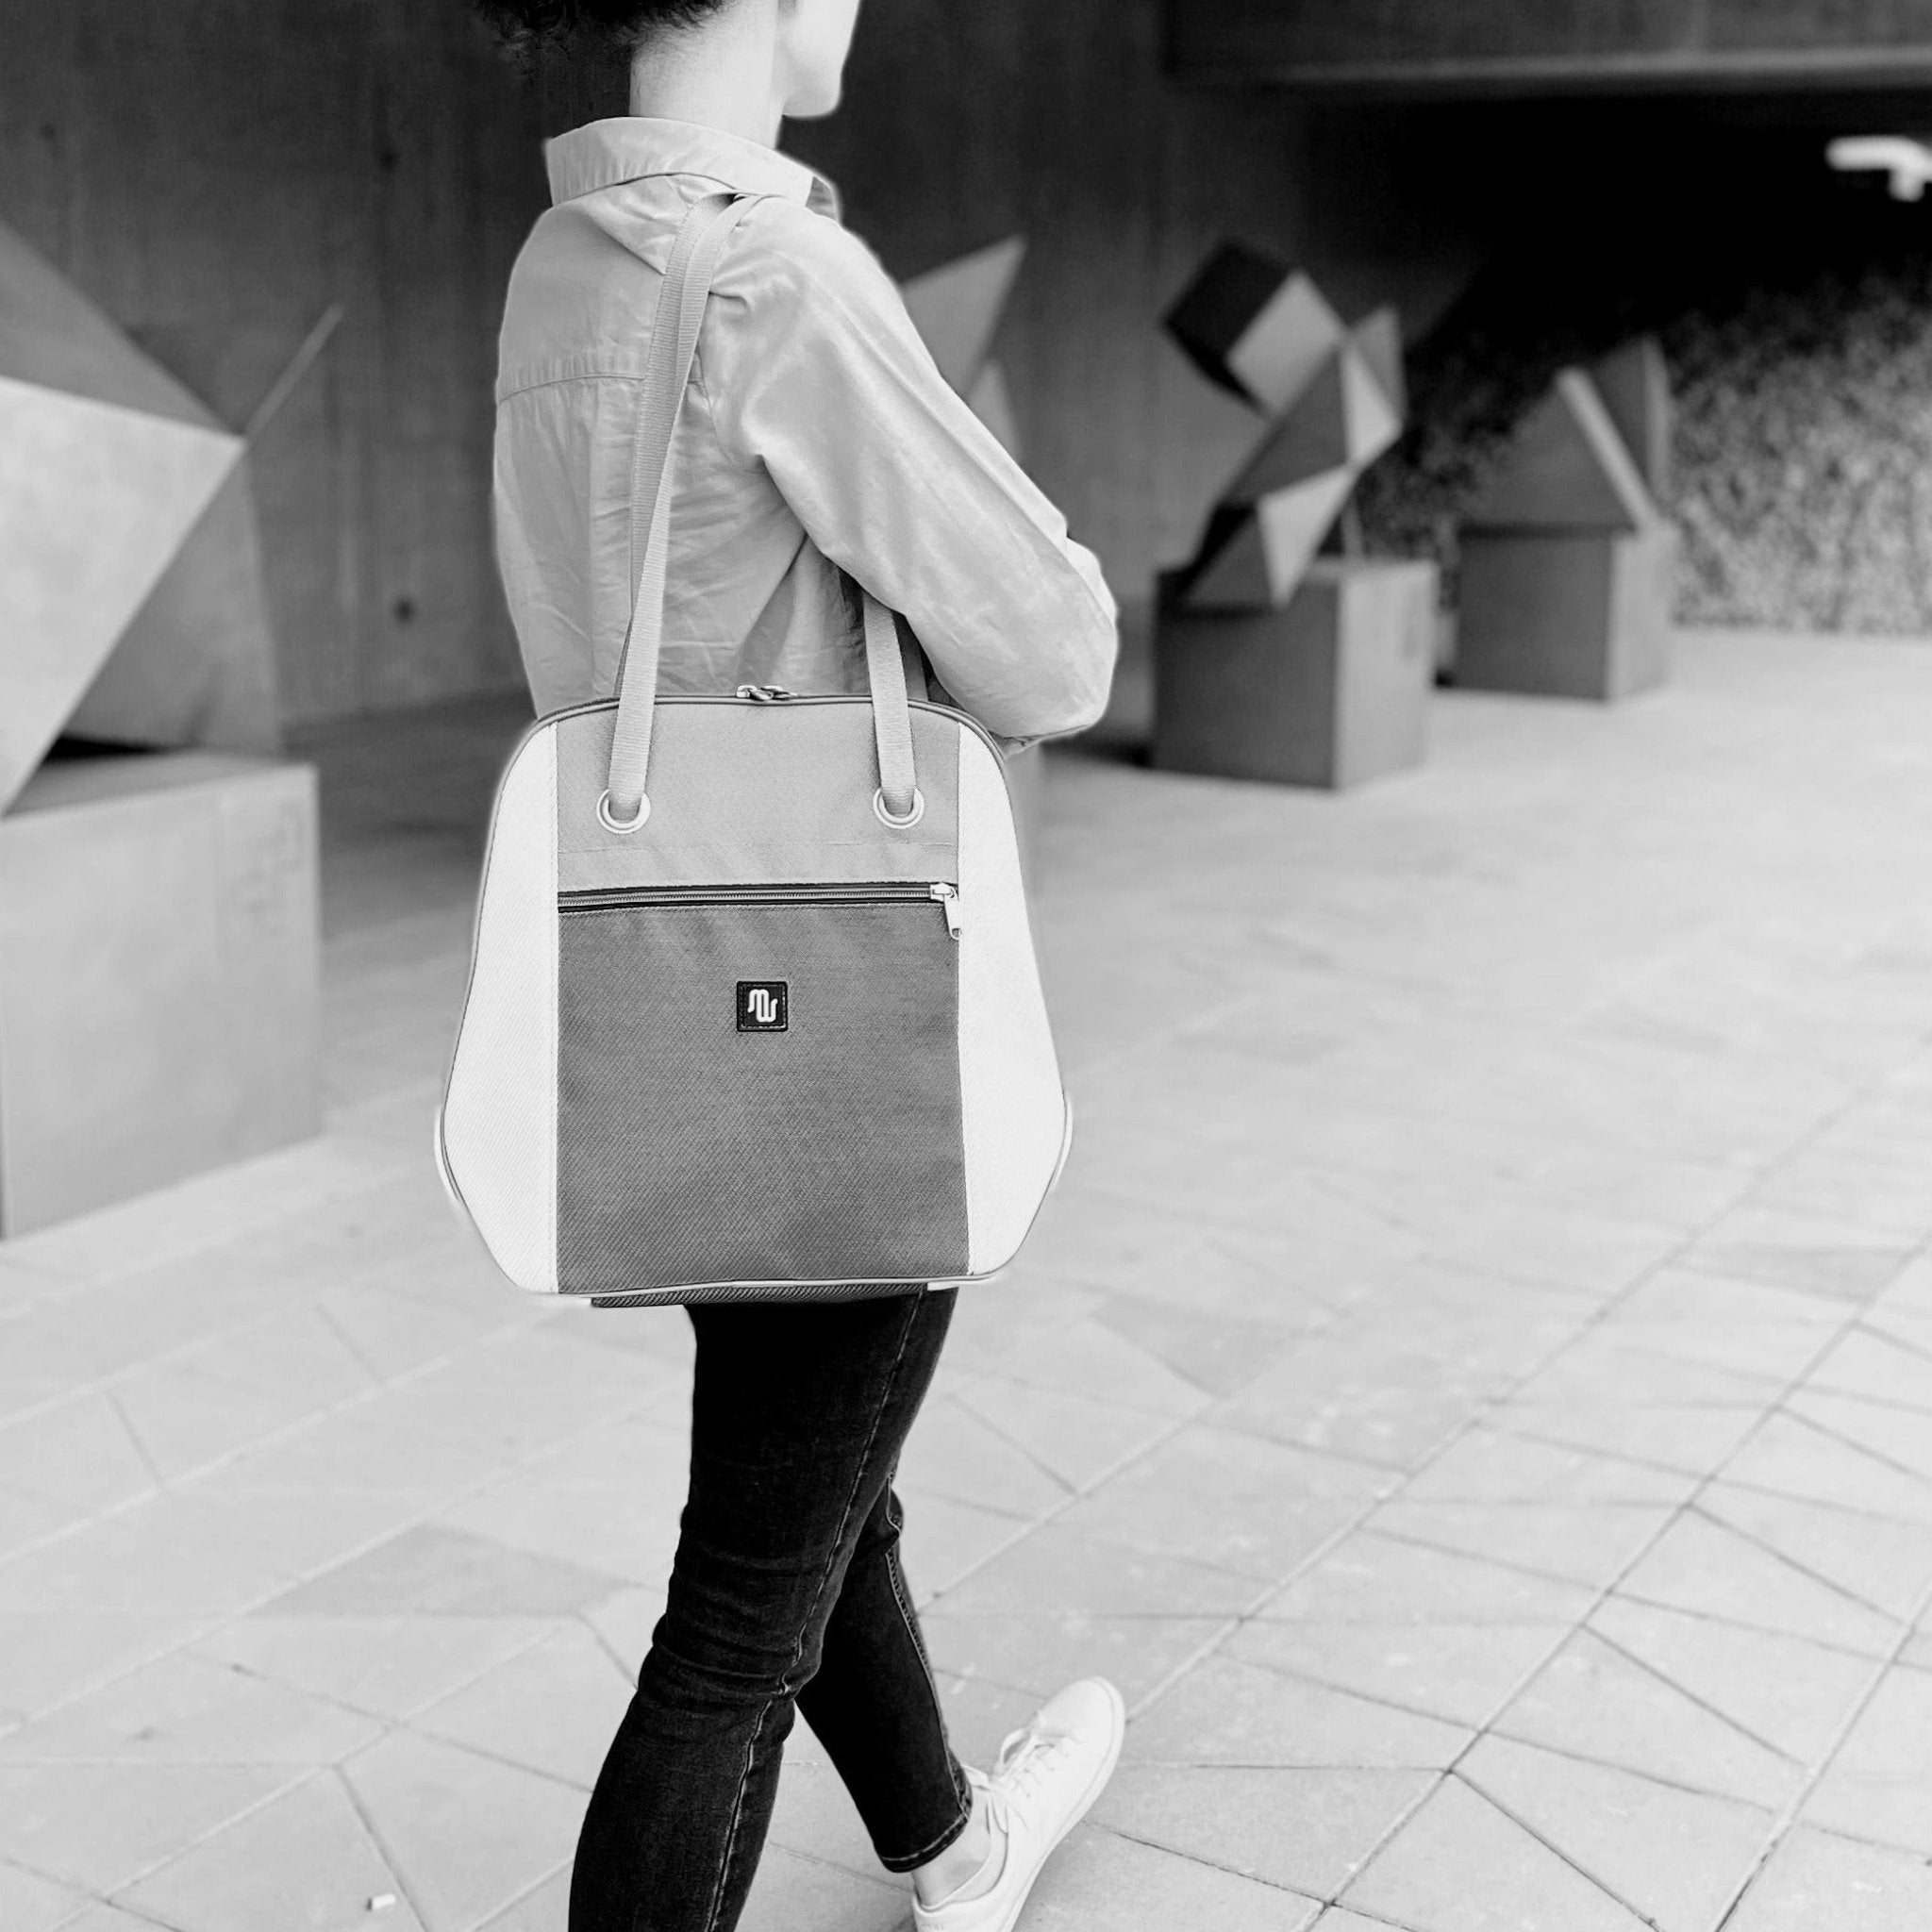 Shoulder Bag - NANA No. 057 - Shoulder bag - medencebag